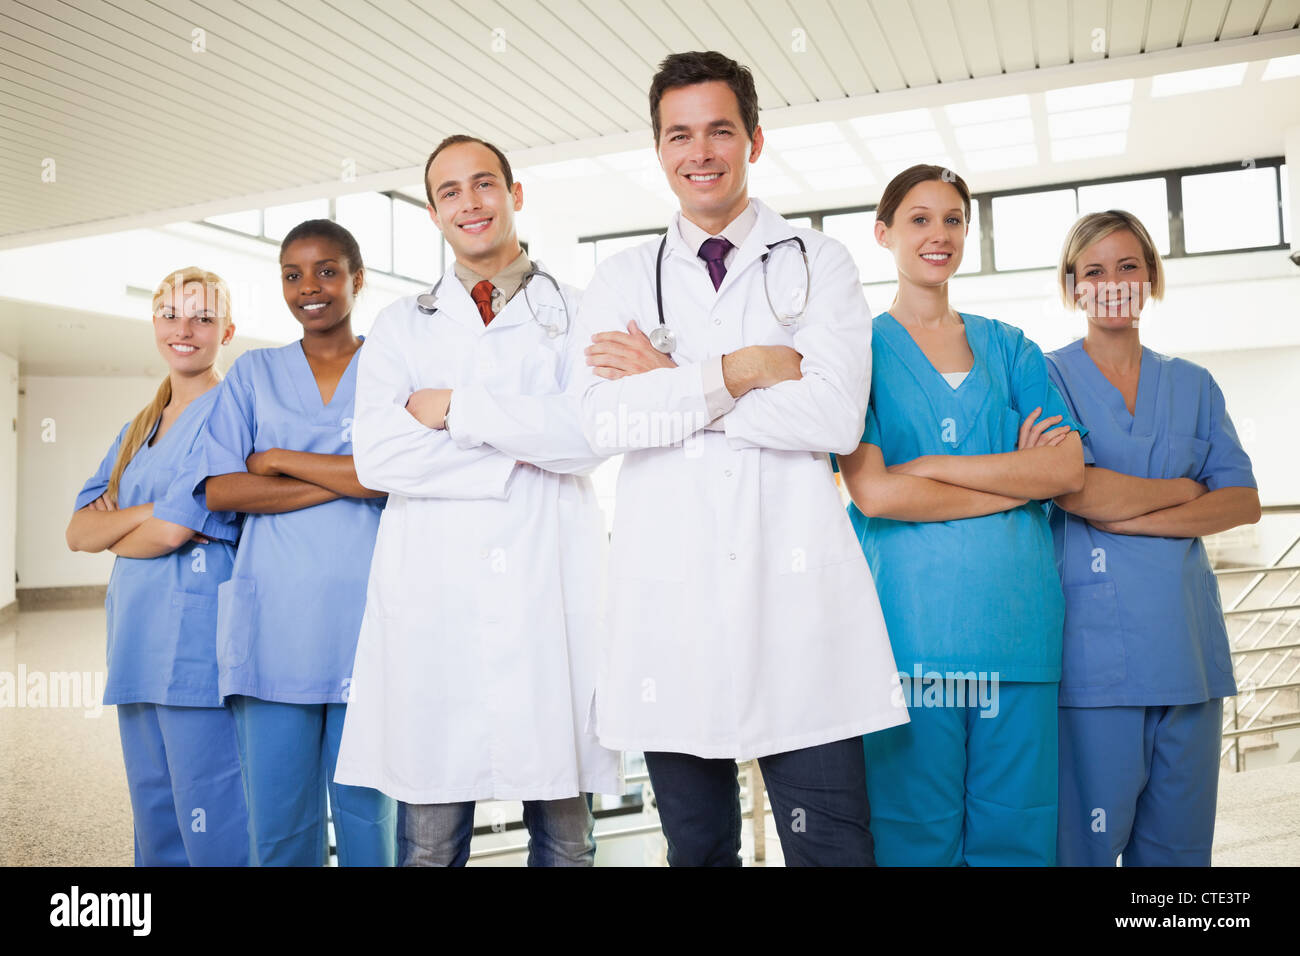 Los médicos con las enfermeras, con los brazos cruzados Foto de stock